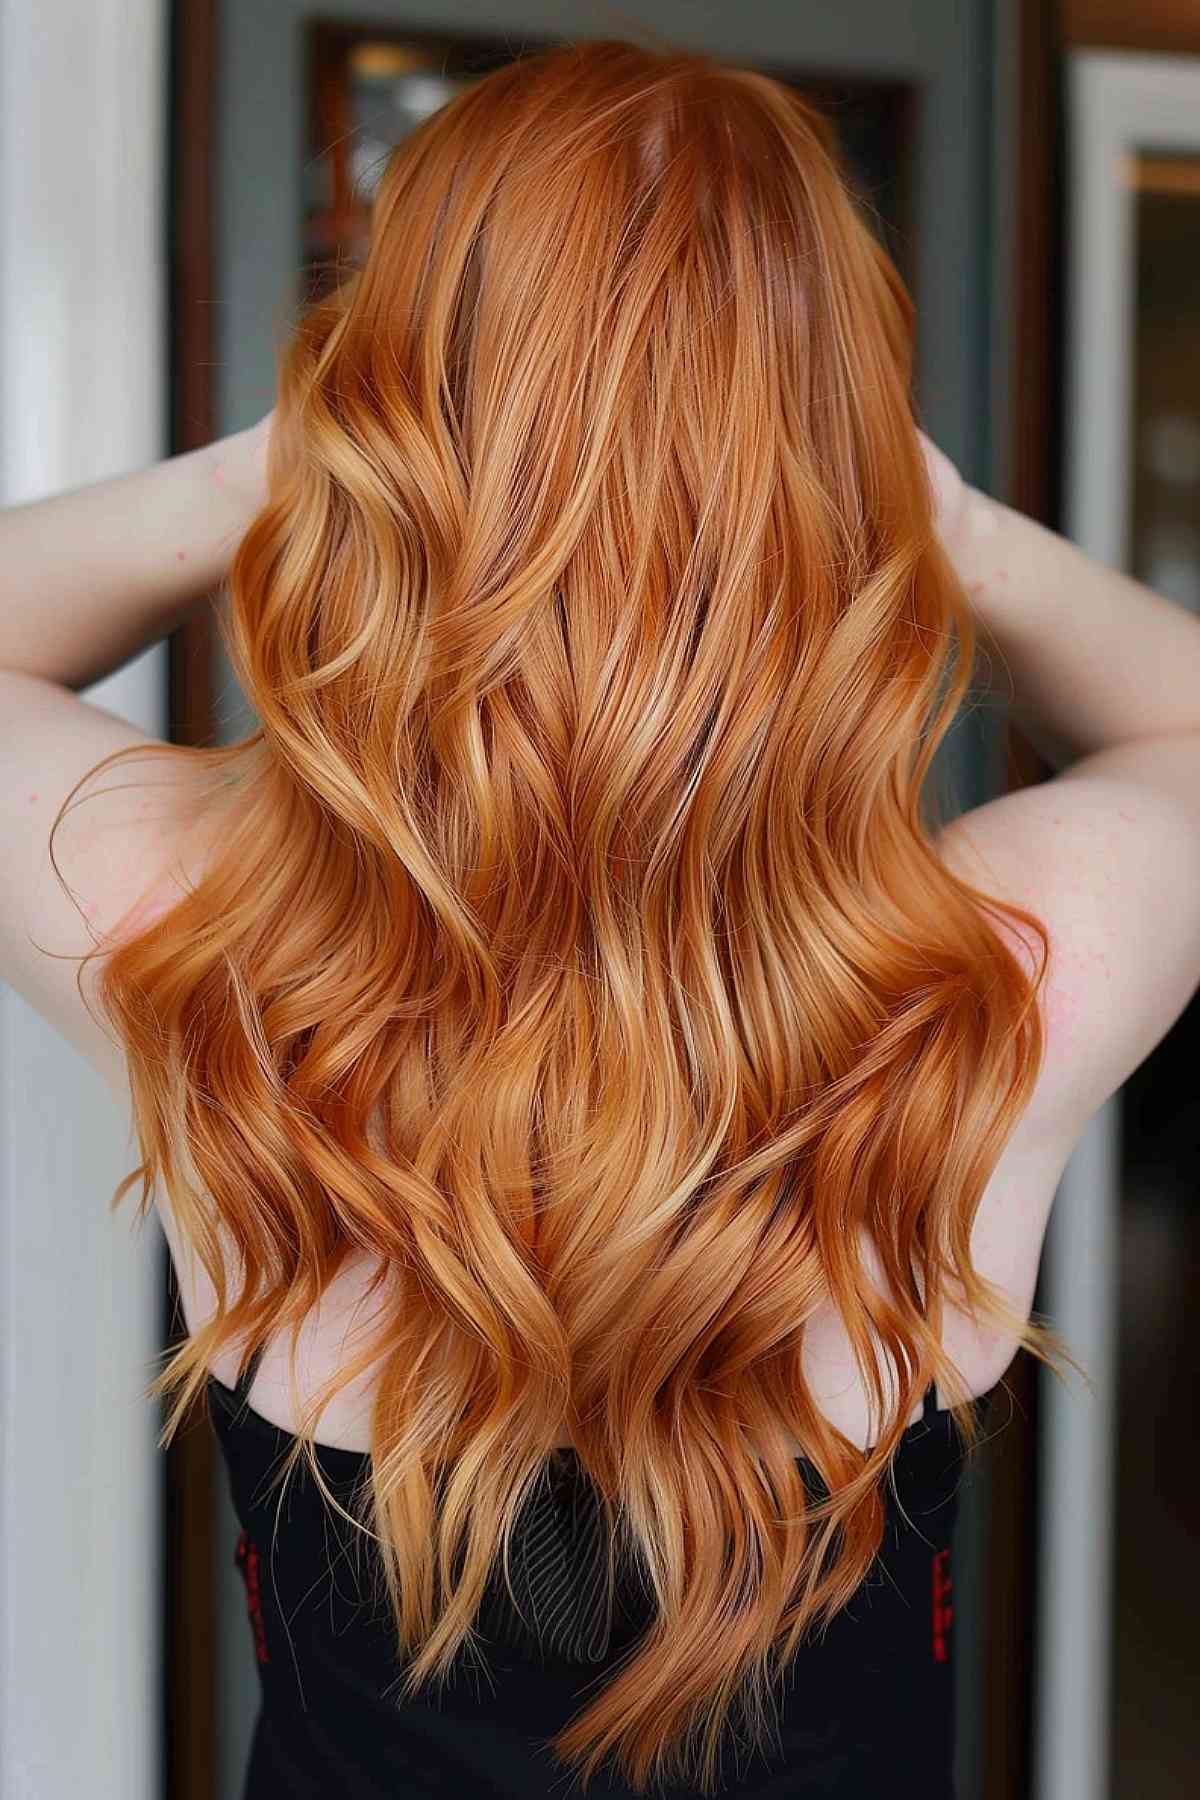 Light ginger copper waves, full of life